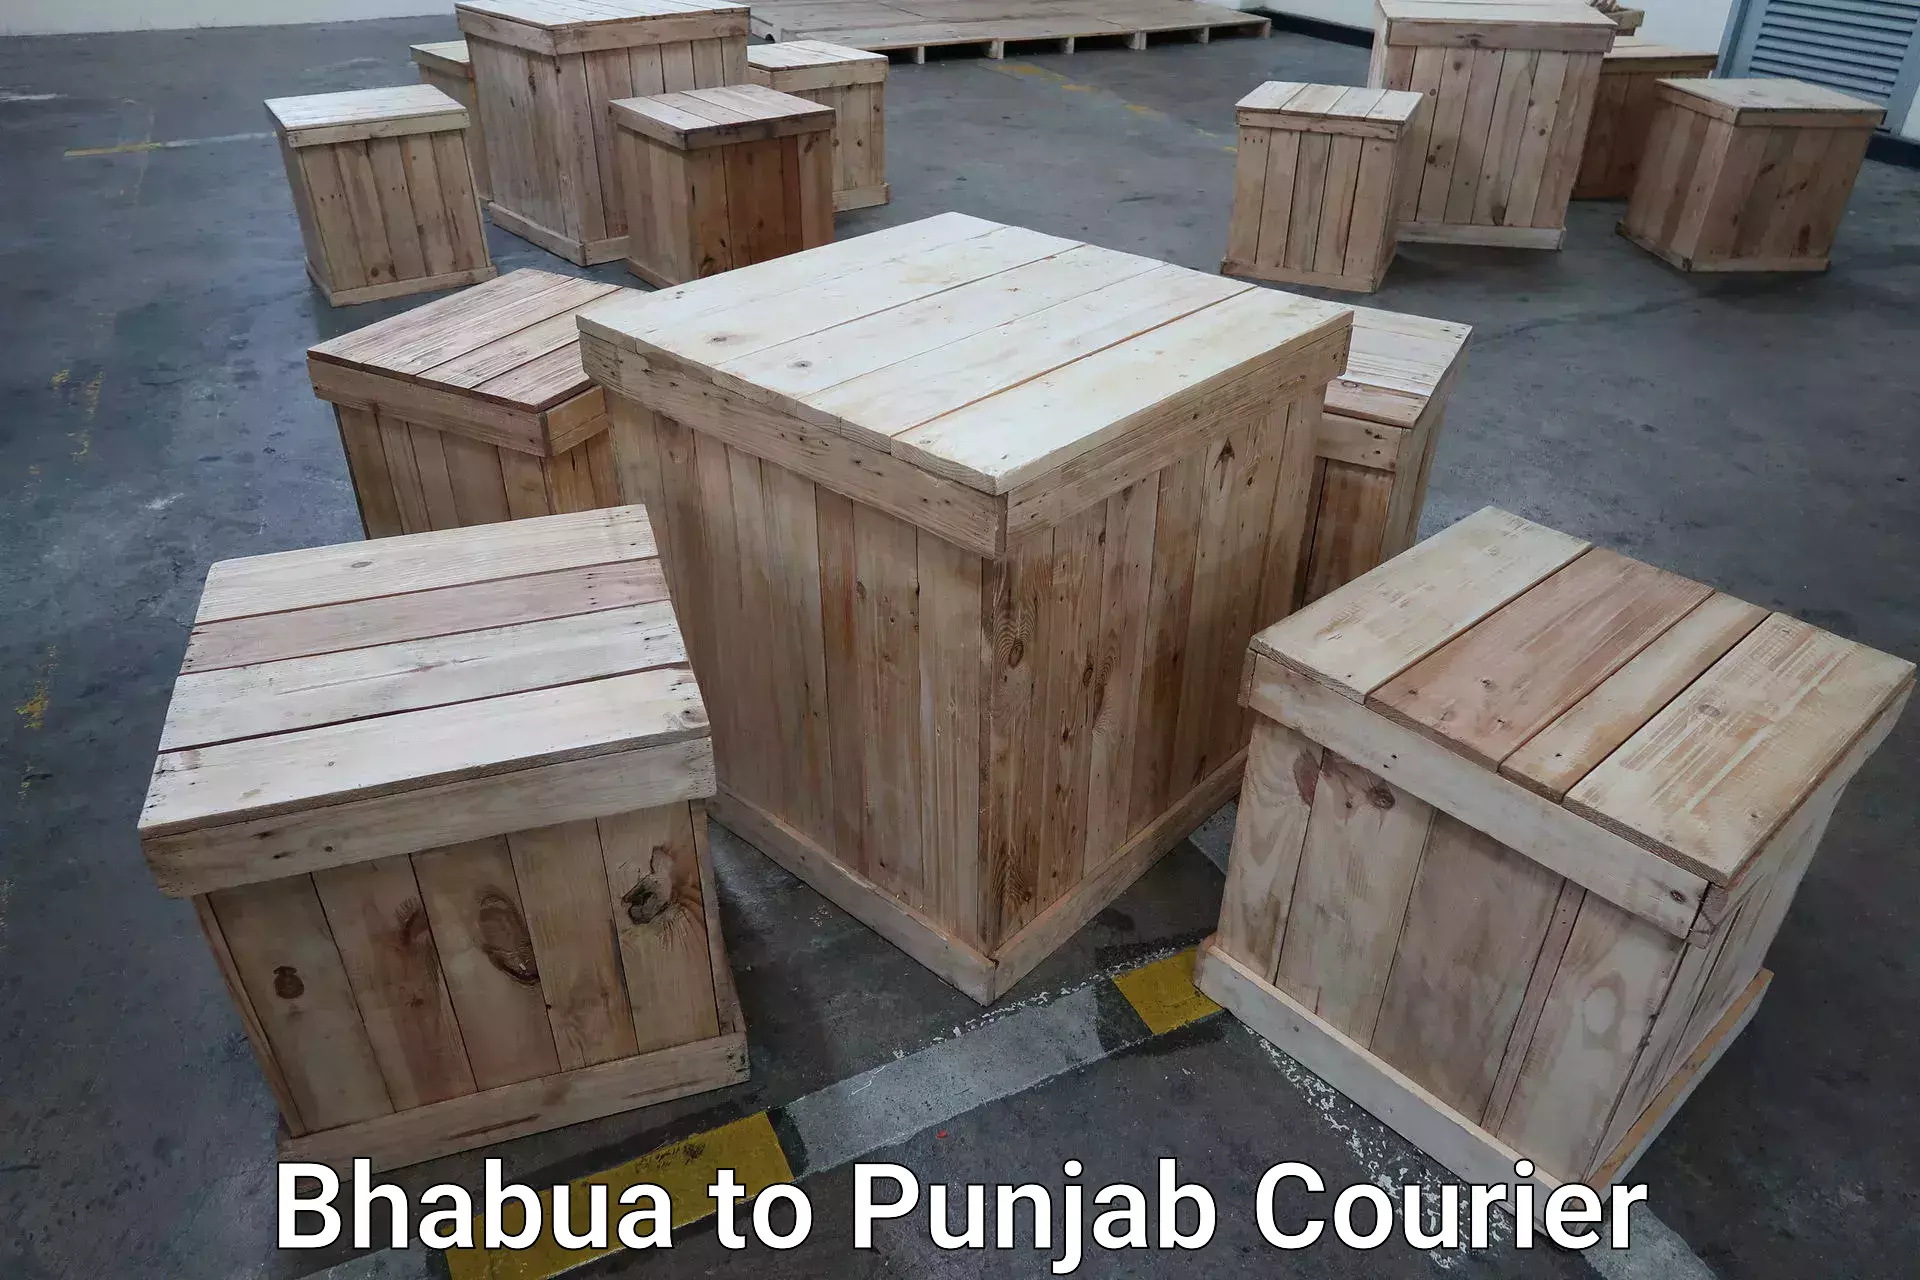 Luggage transport consulting Bhabua to Punjab